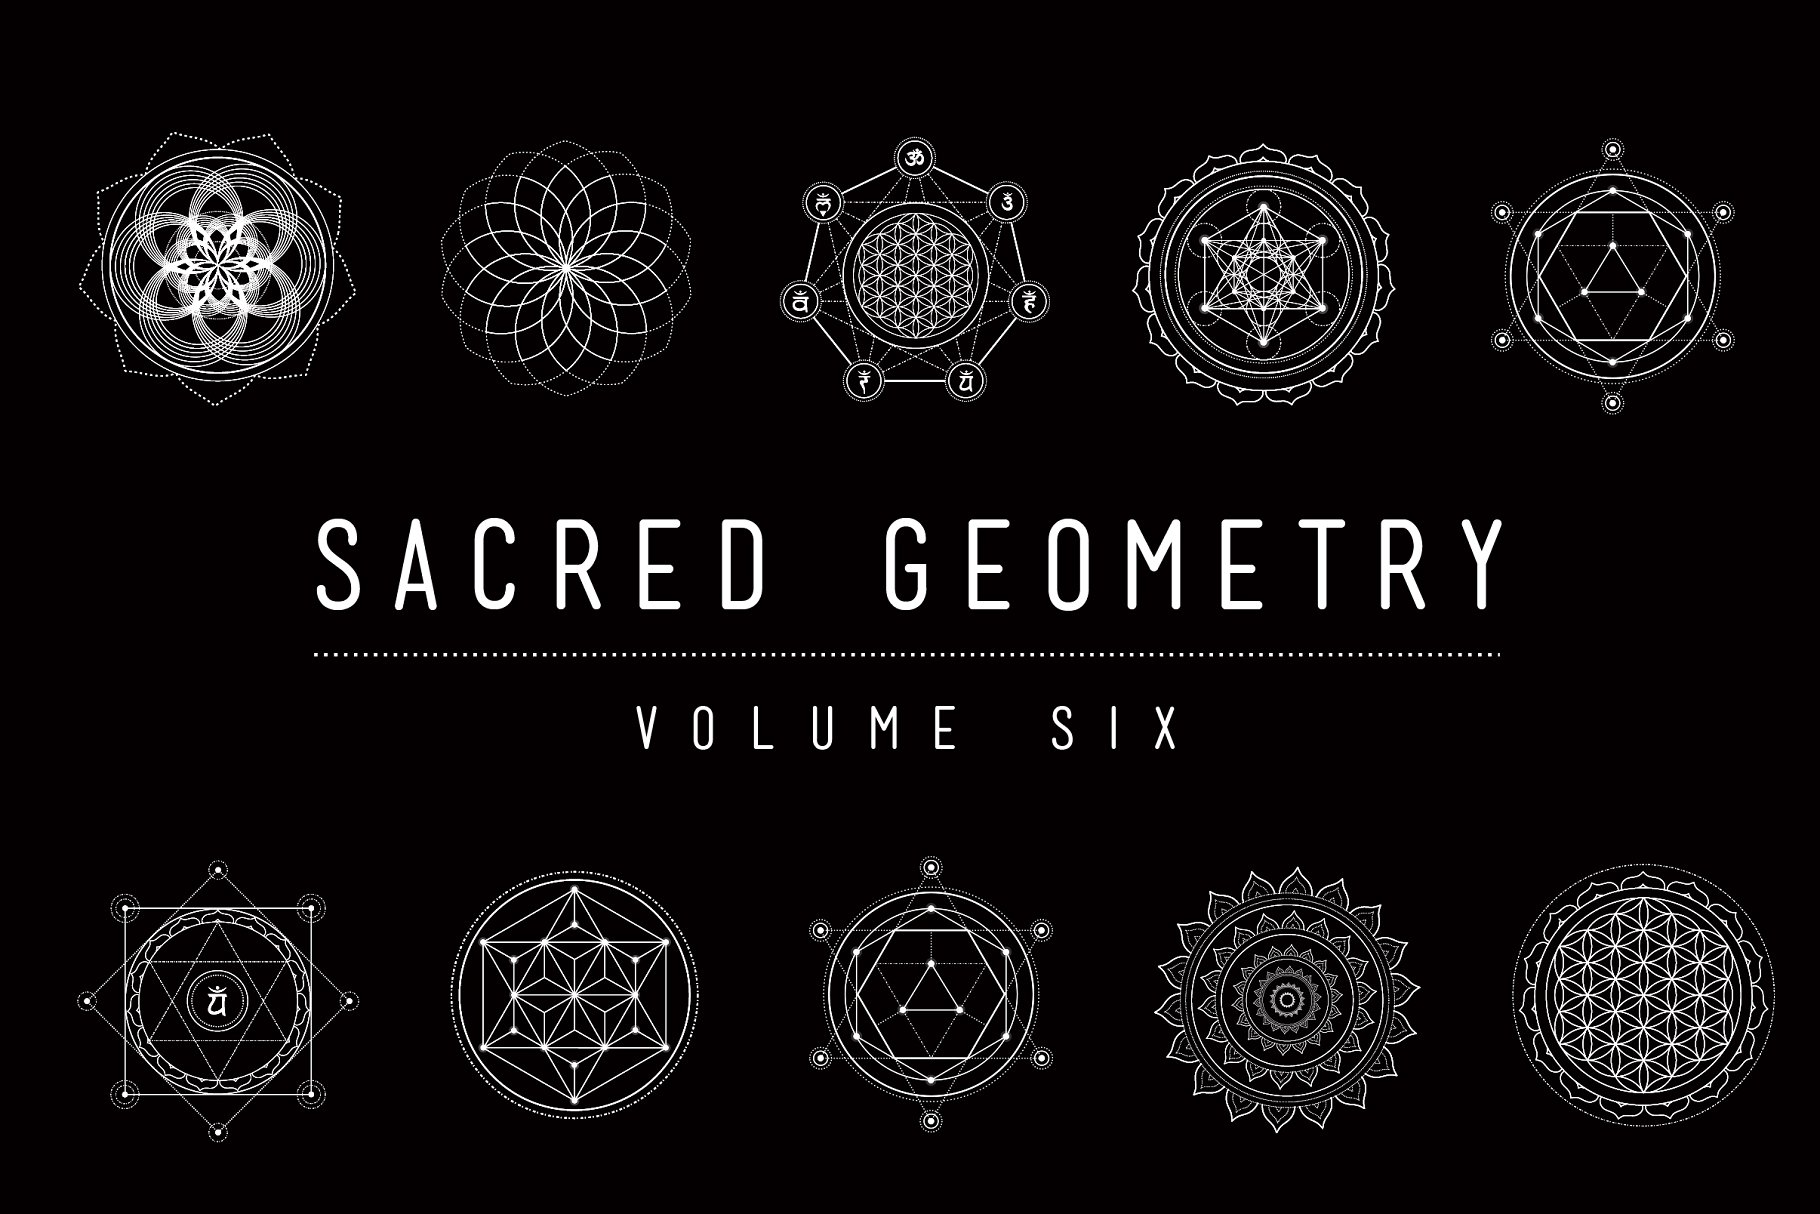 神圣宗教几何图形矢量素材包 Sacred Geometry Vector Pack Vol. 6插图1